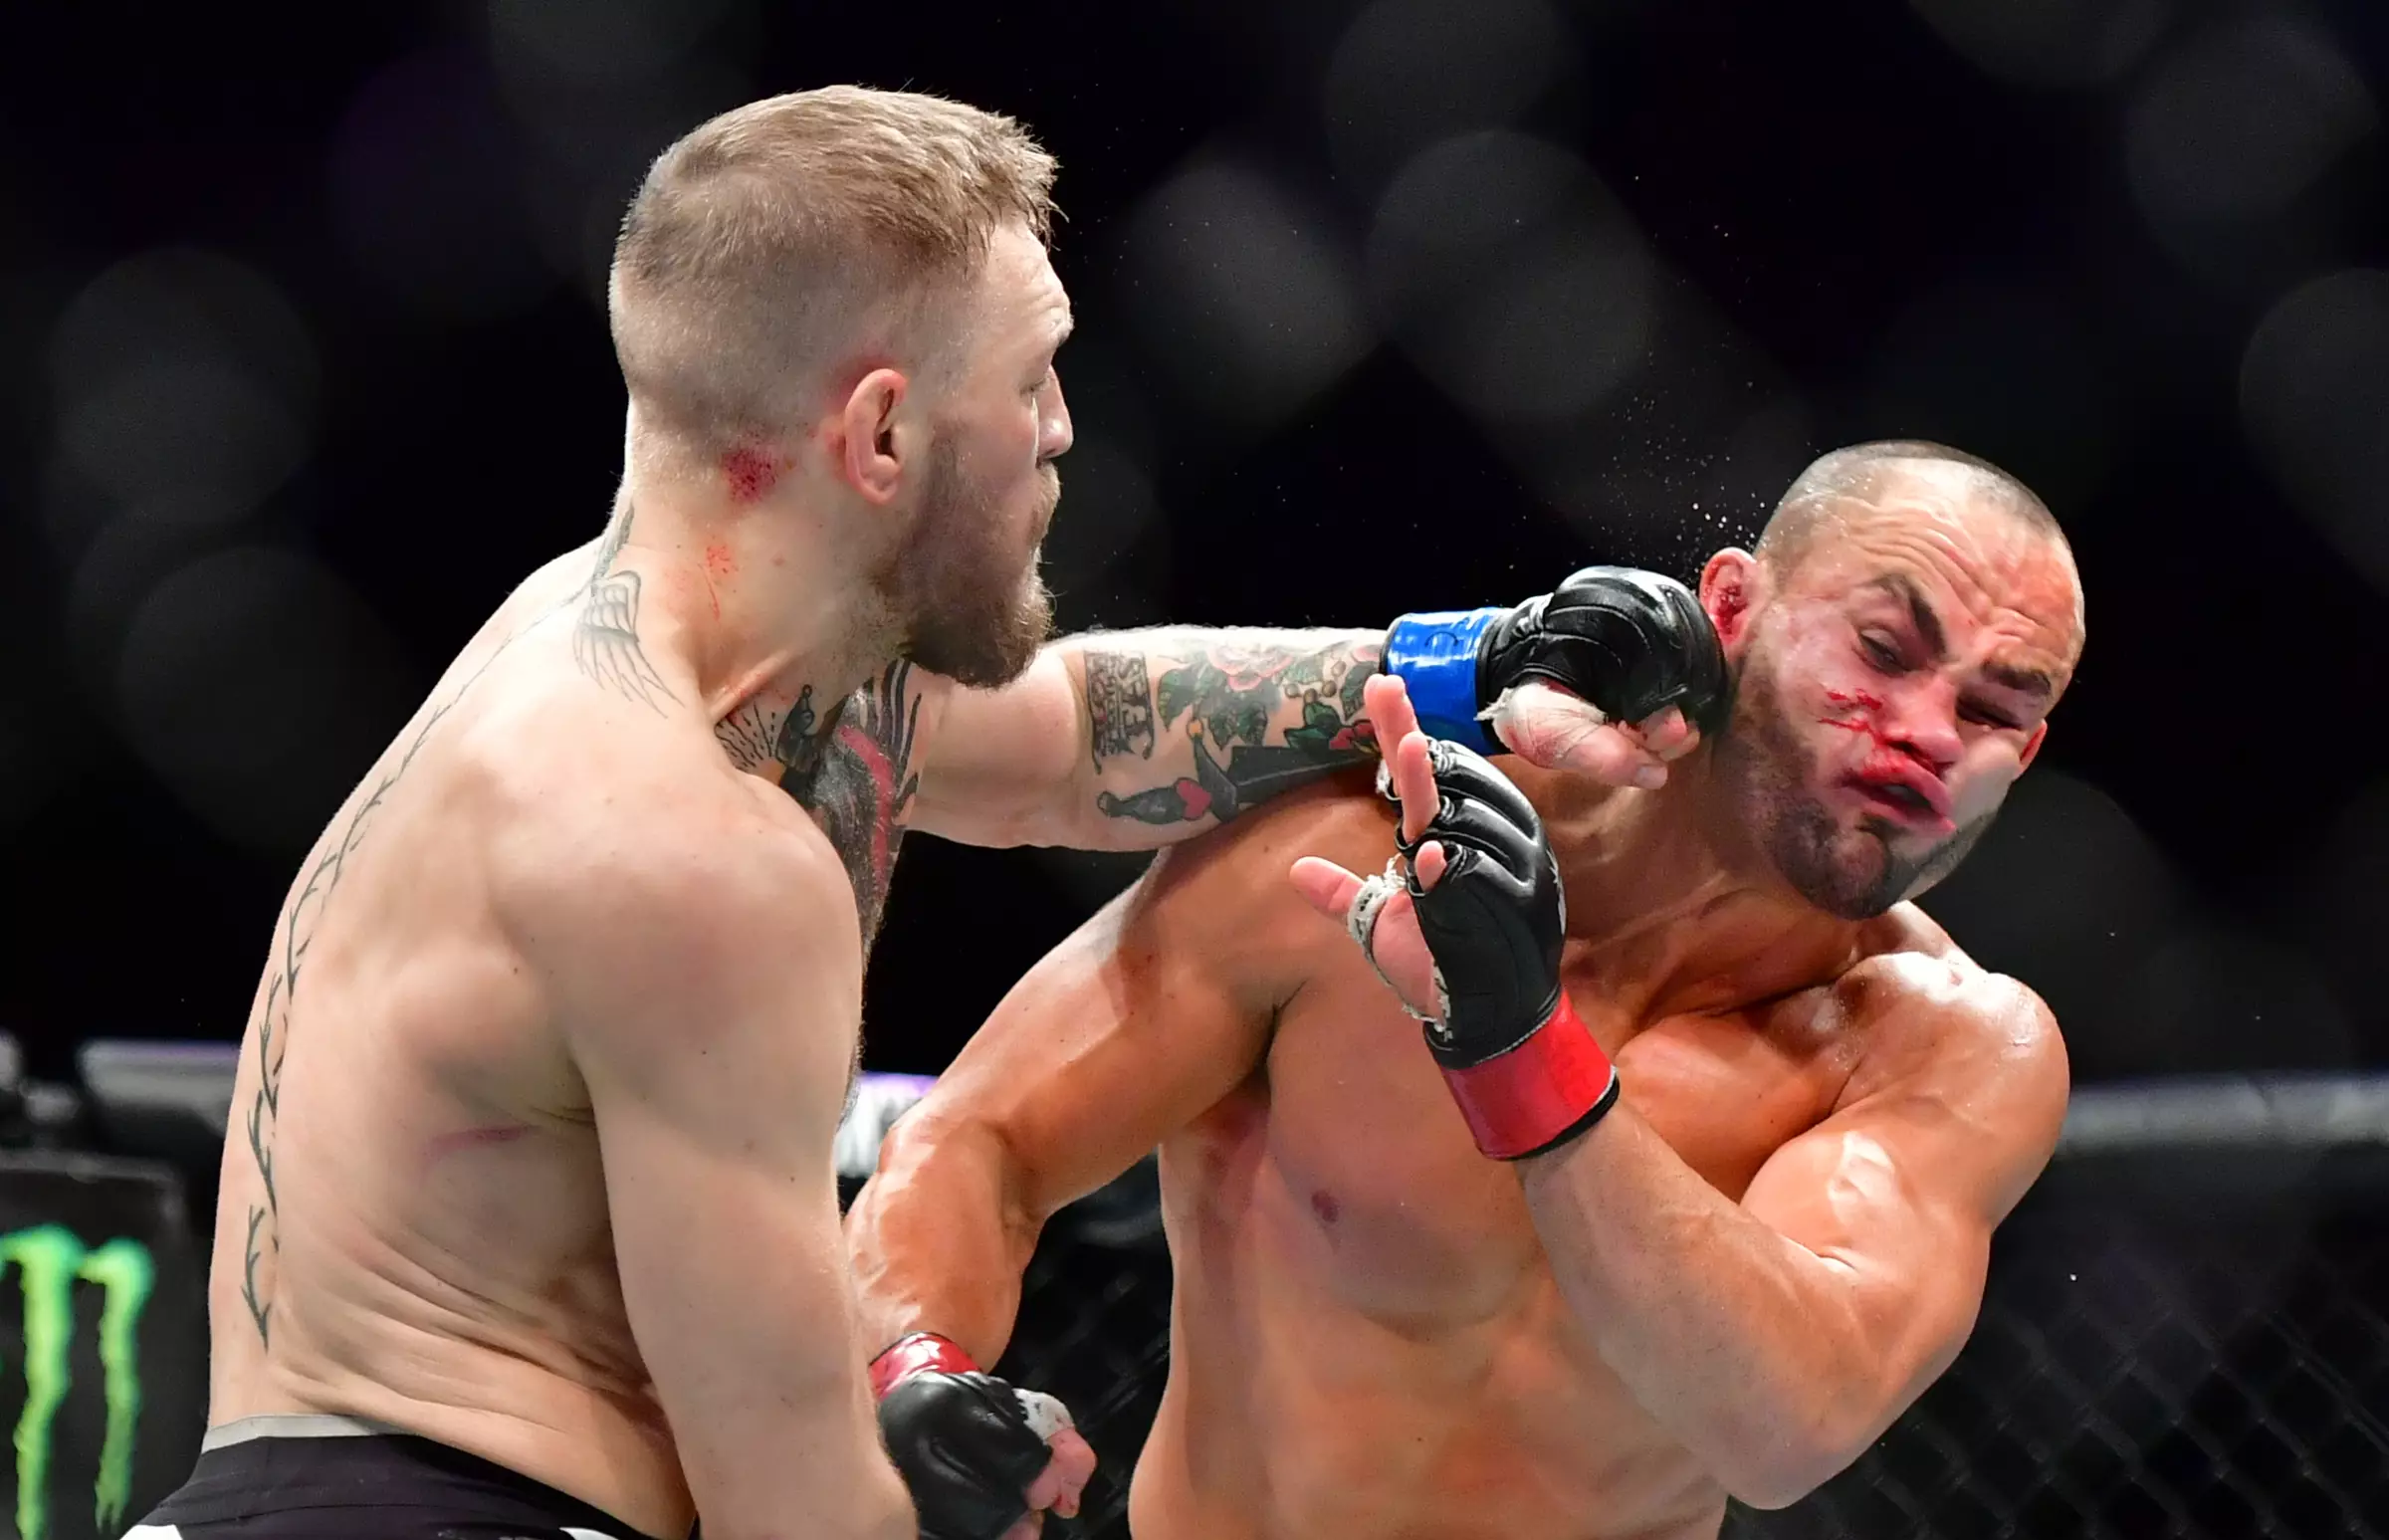 McGregor lands a clubbing left-hand flush on Alvarez's chin. Image: PA